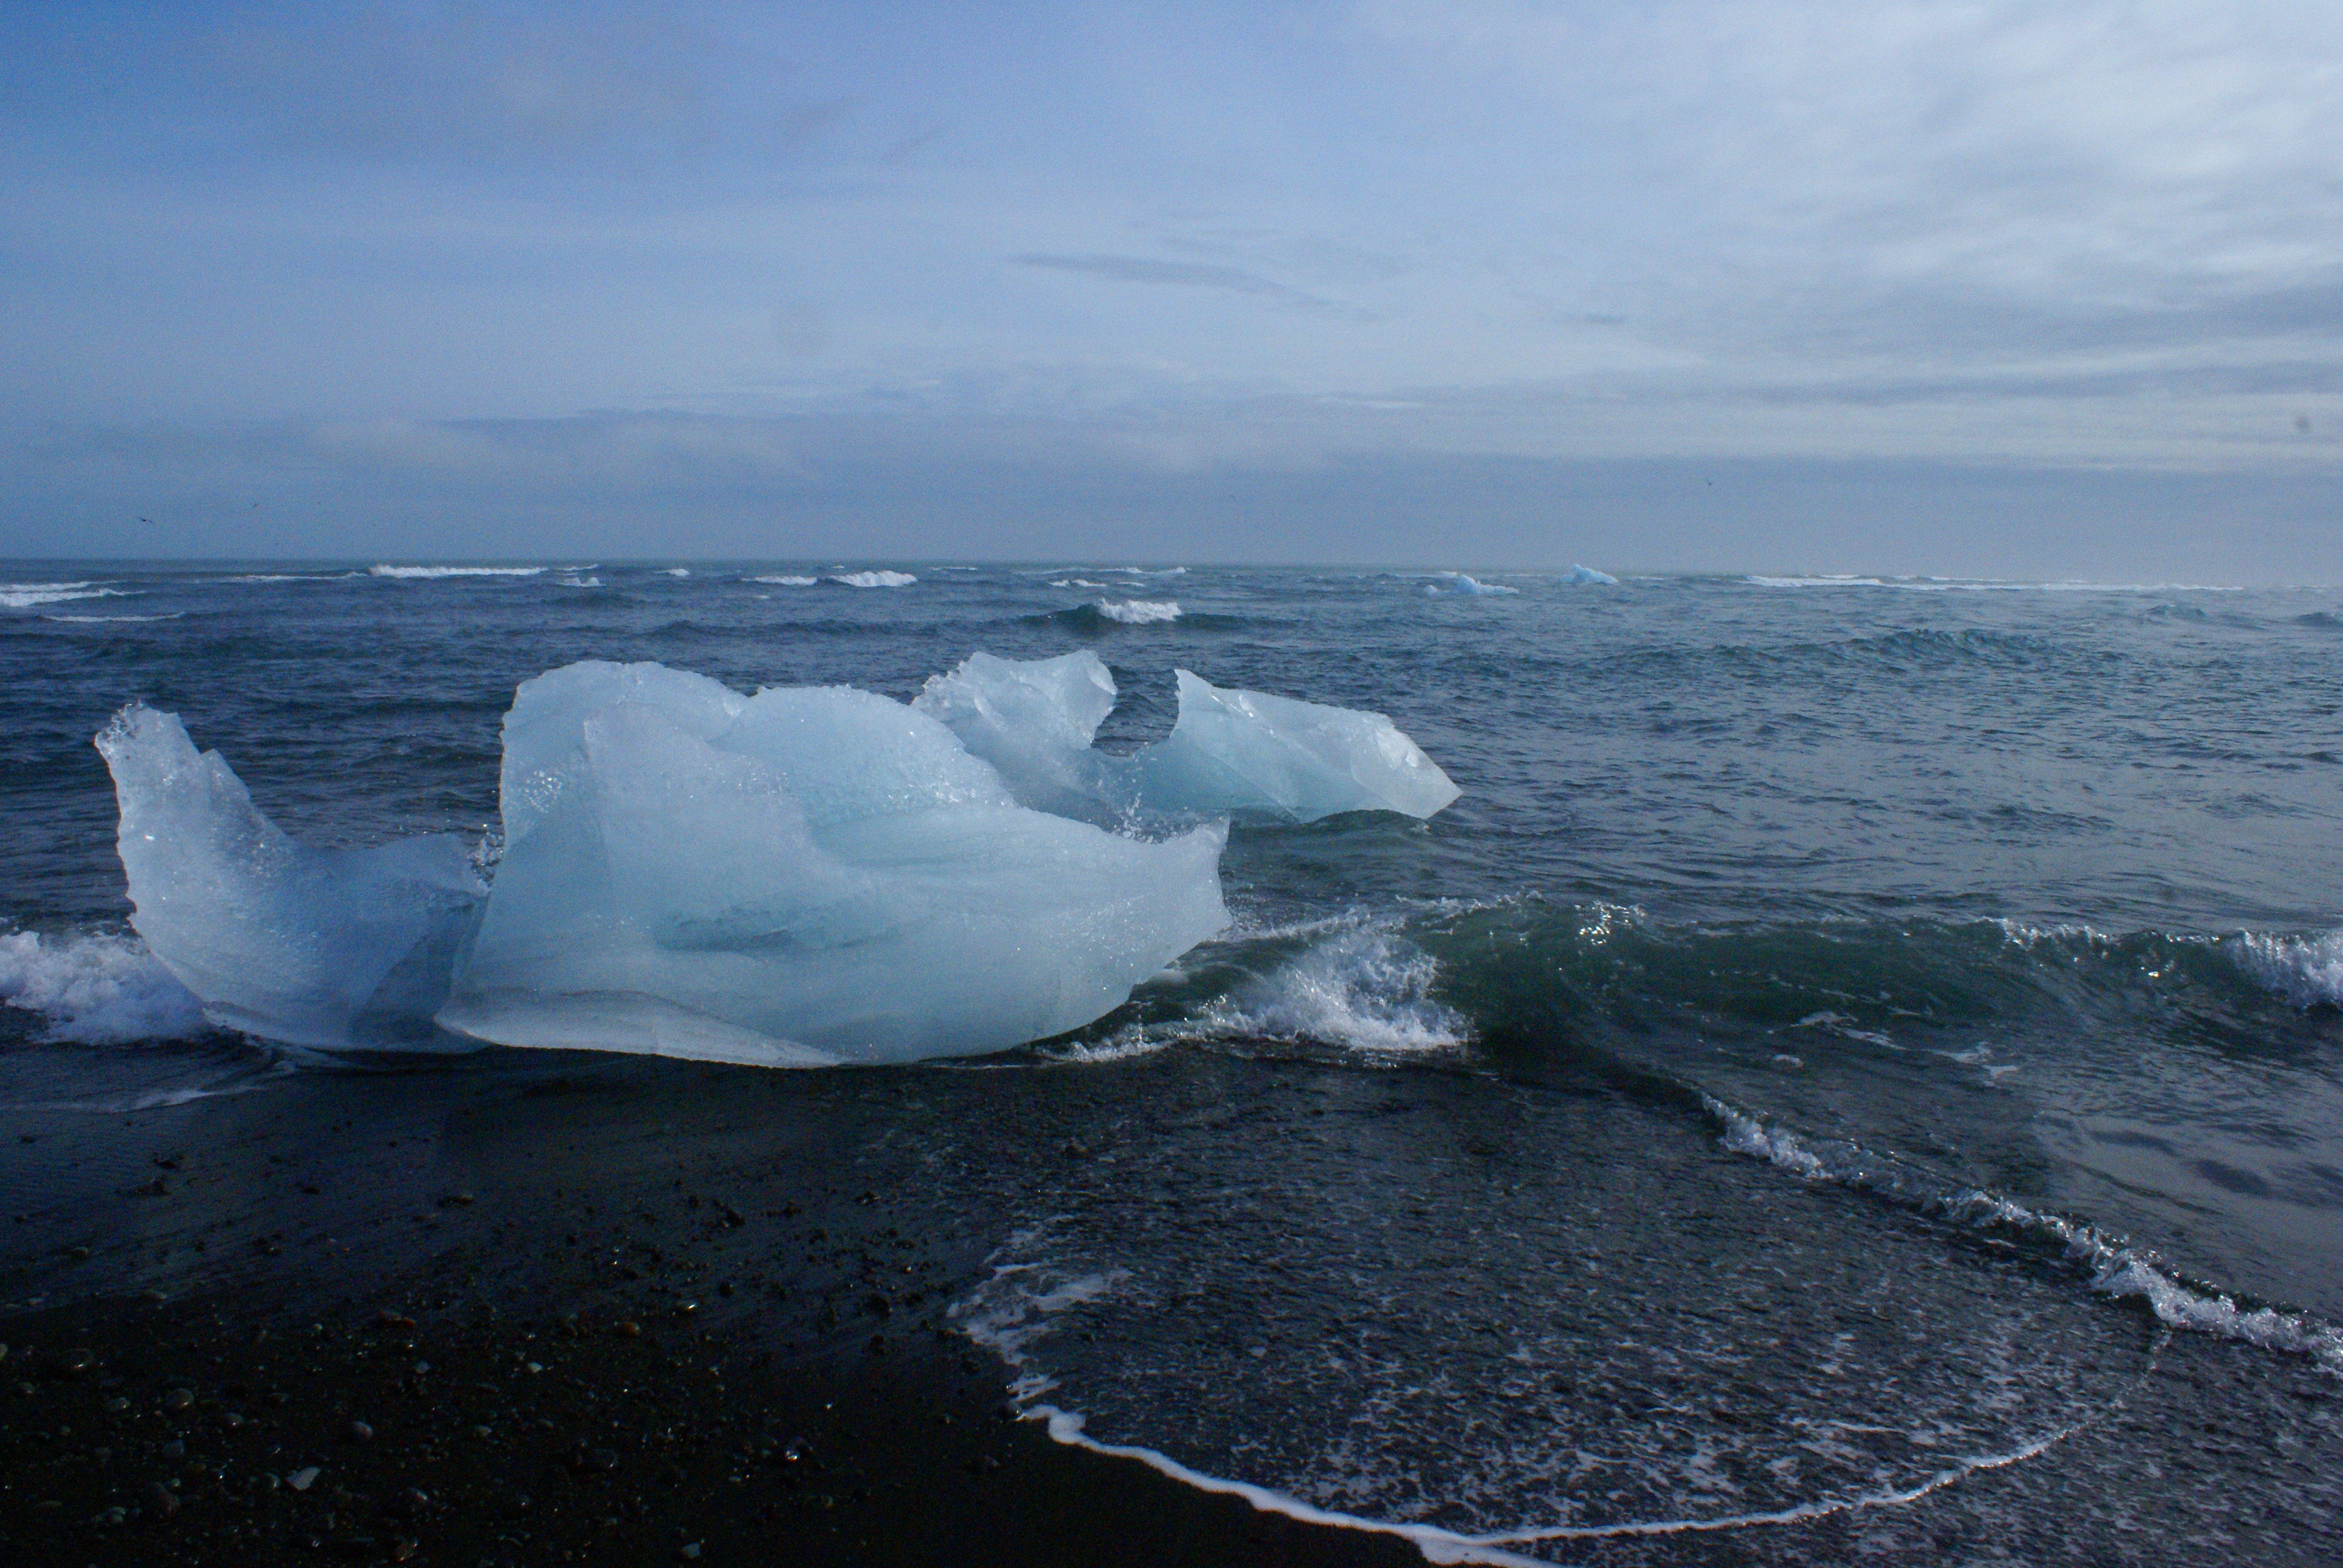 Rejs etapowy na Islandię. Rejsy stażowe na pływach.